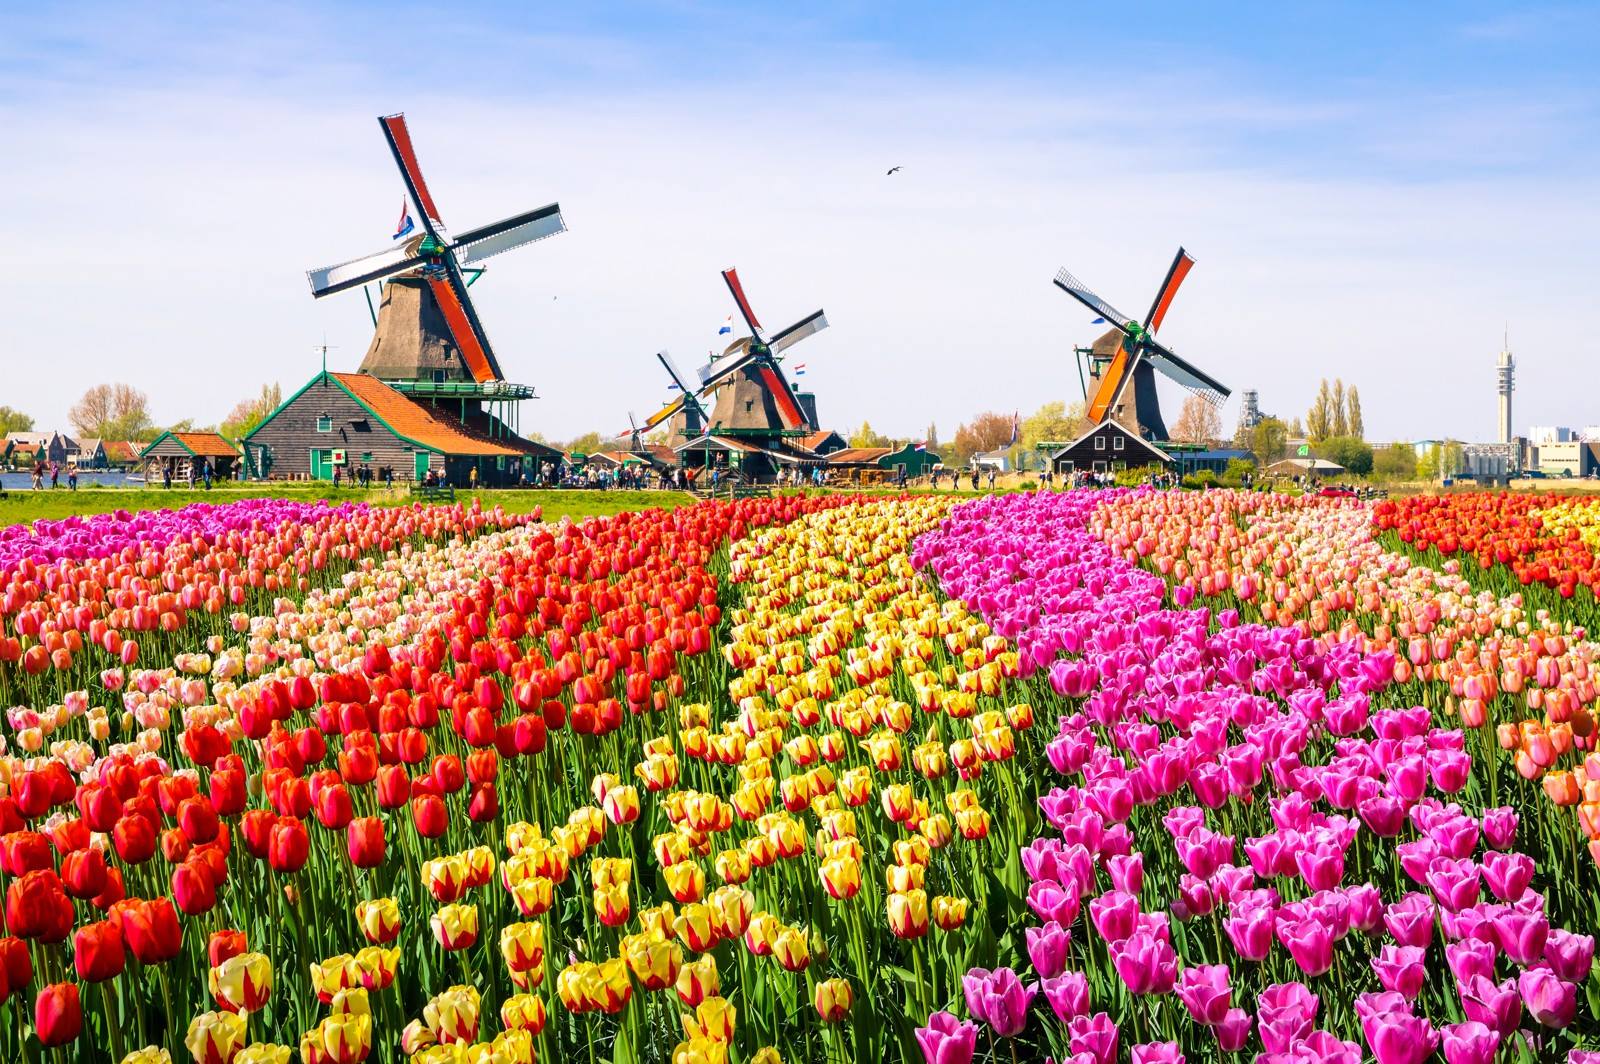 Bollenvelden In Bloei 2021 Waar Vind Je De Mooiste Tulpenvelden 2021 In Nederland Onze Top 15